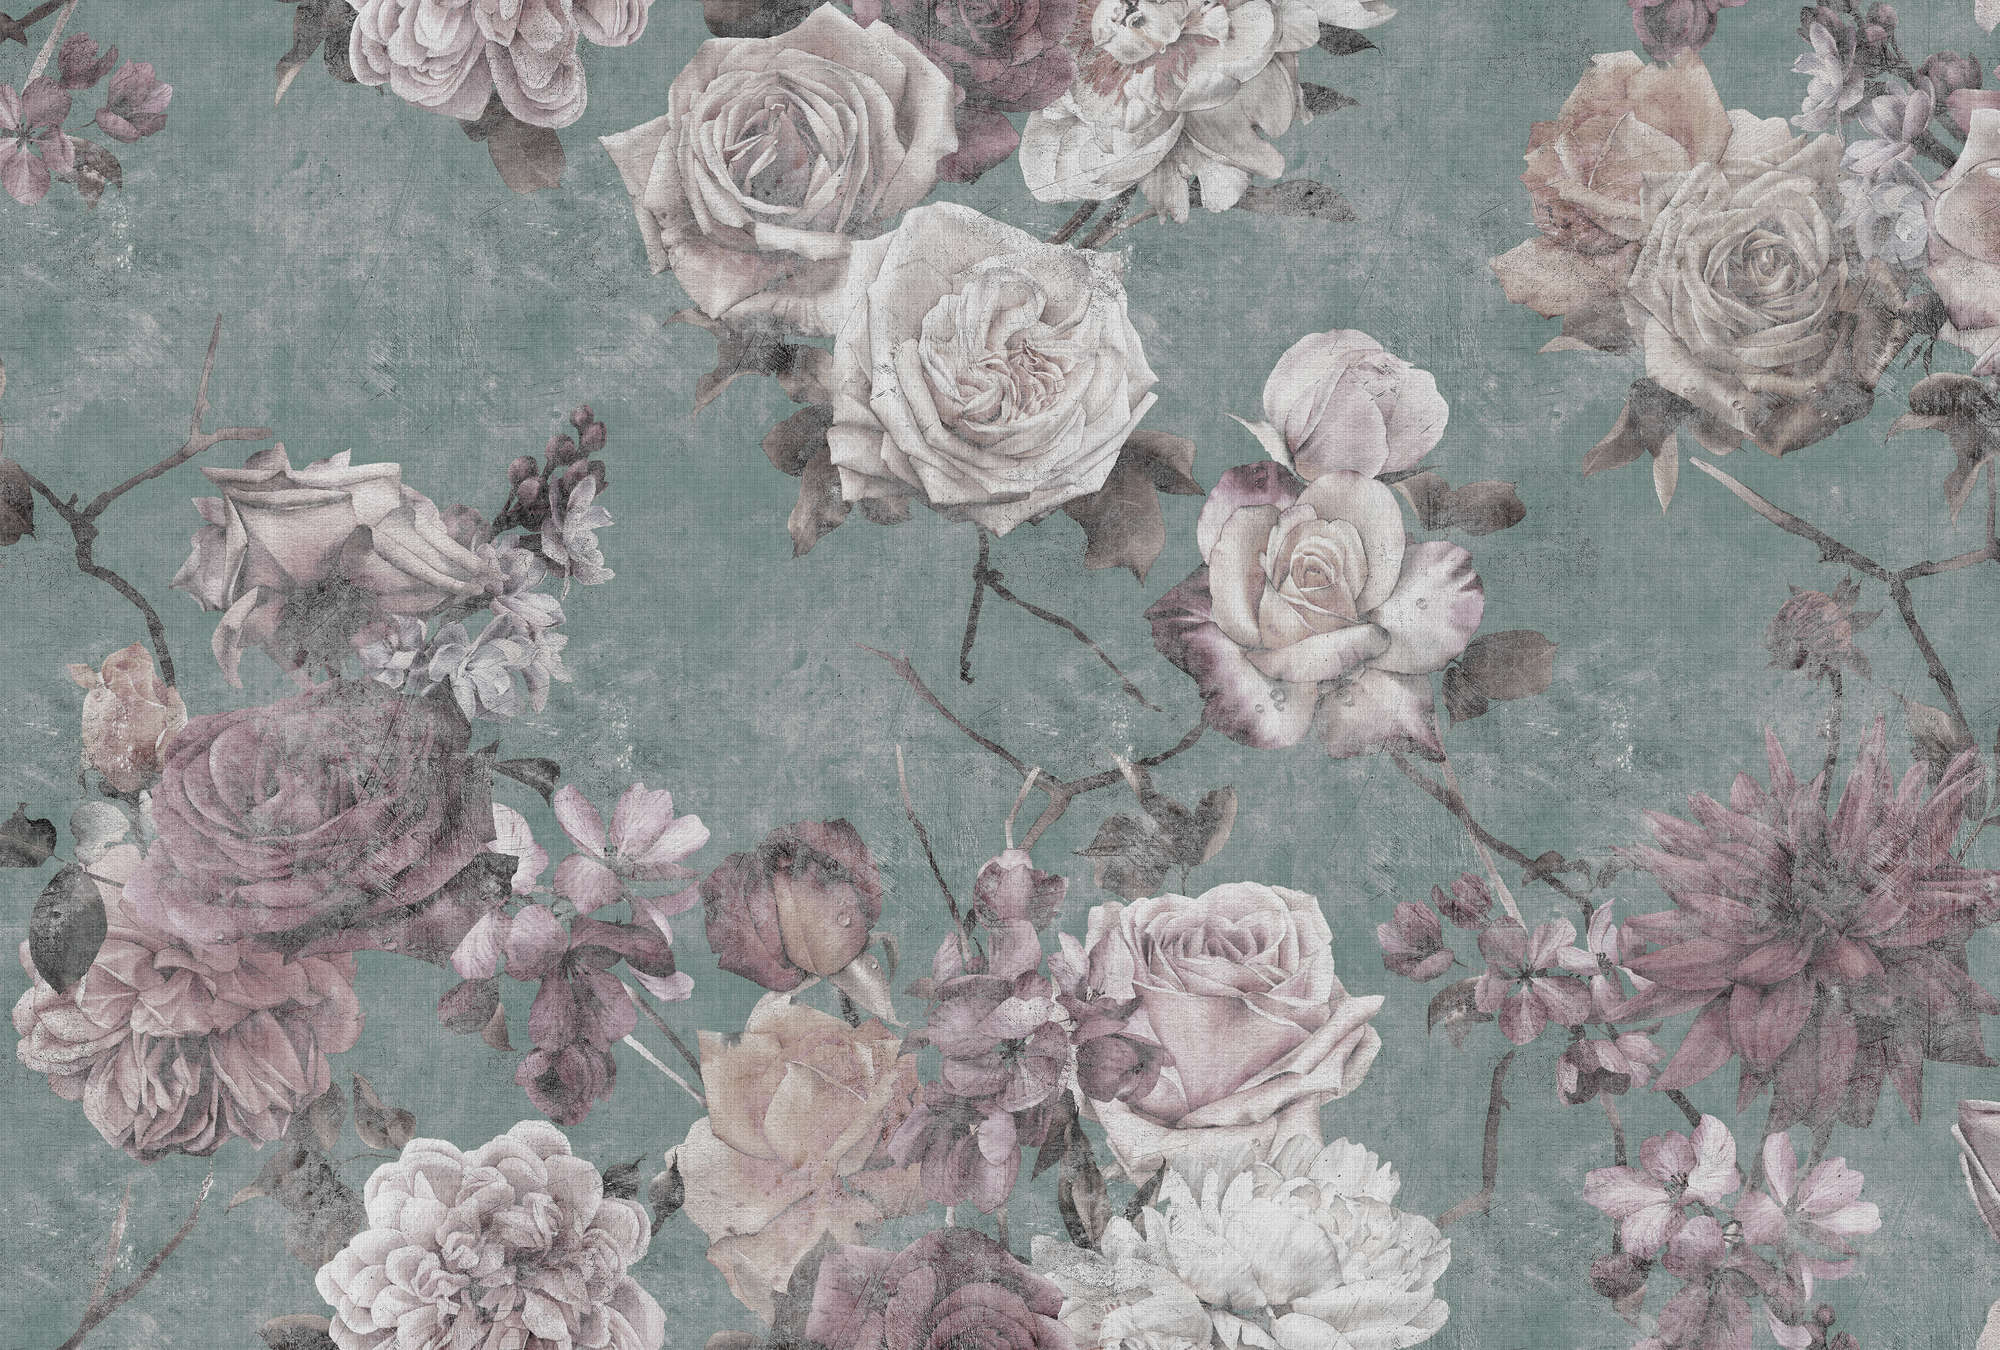             Sleeping Beauty 2 - Carta da parati con fiori di rosa in stile vintage - Texture lino naturale - Rosa, turchese e perla in pile liscio
        